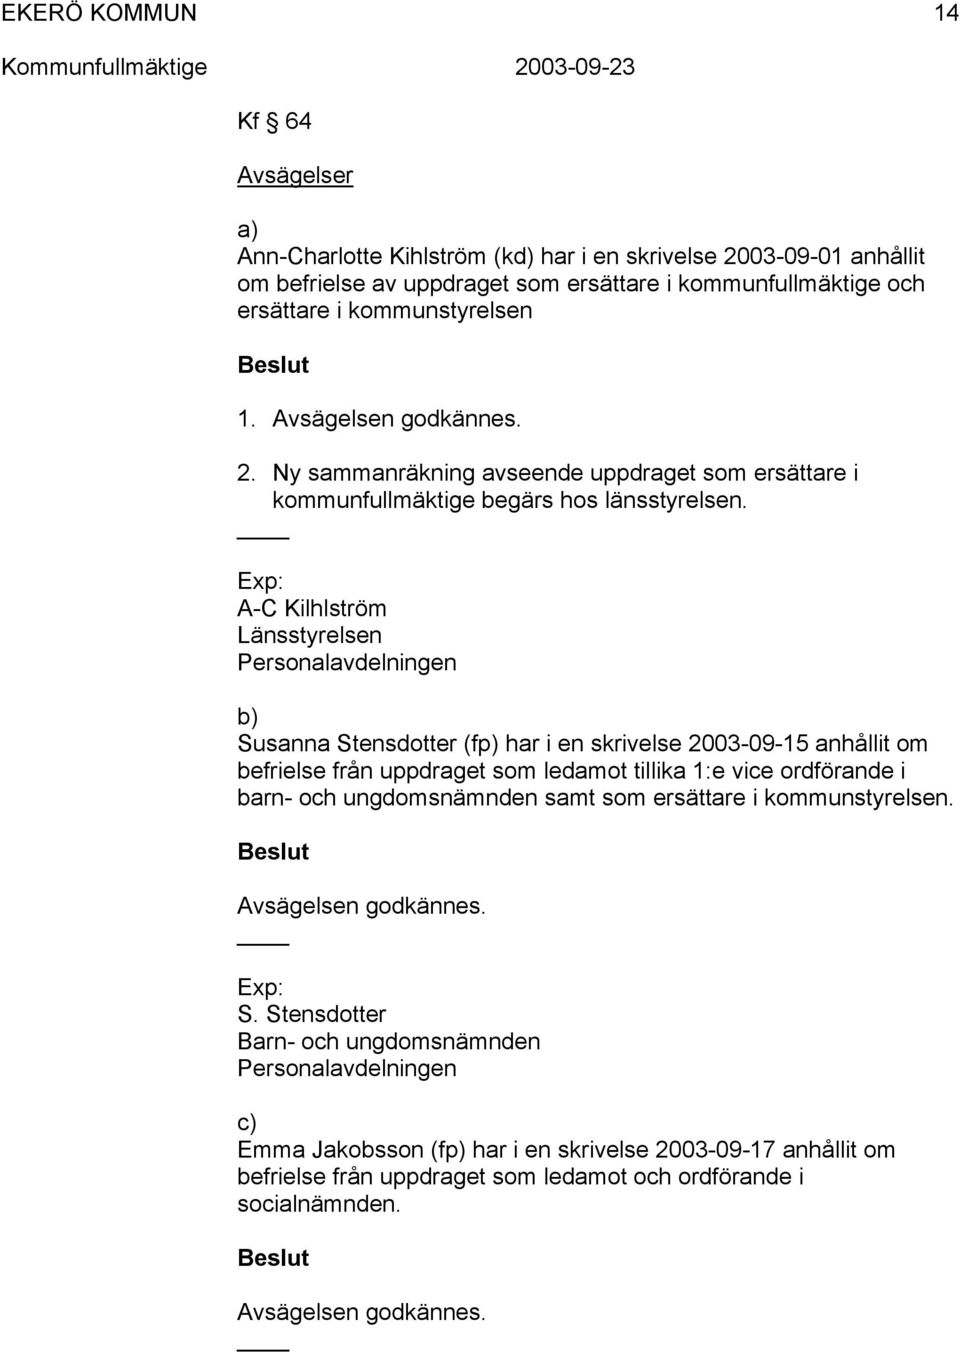 Exp: A-C Kilhlström Länsstyrelsen Personalavdelningen b) Susanna Stensdotter (fp) har i en skrivelse 2003-09-15 anhållit om befrielse från uppdraget som ledamot tillika 1:e vice ordförande i barn-